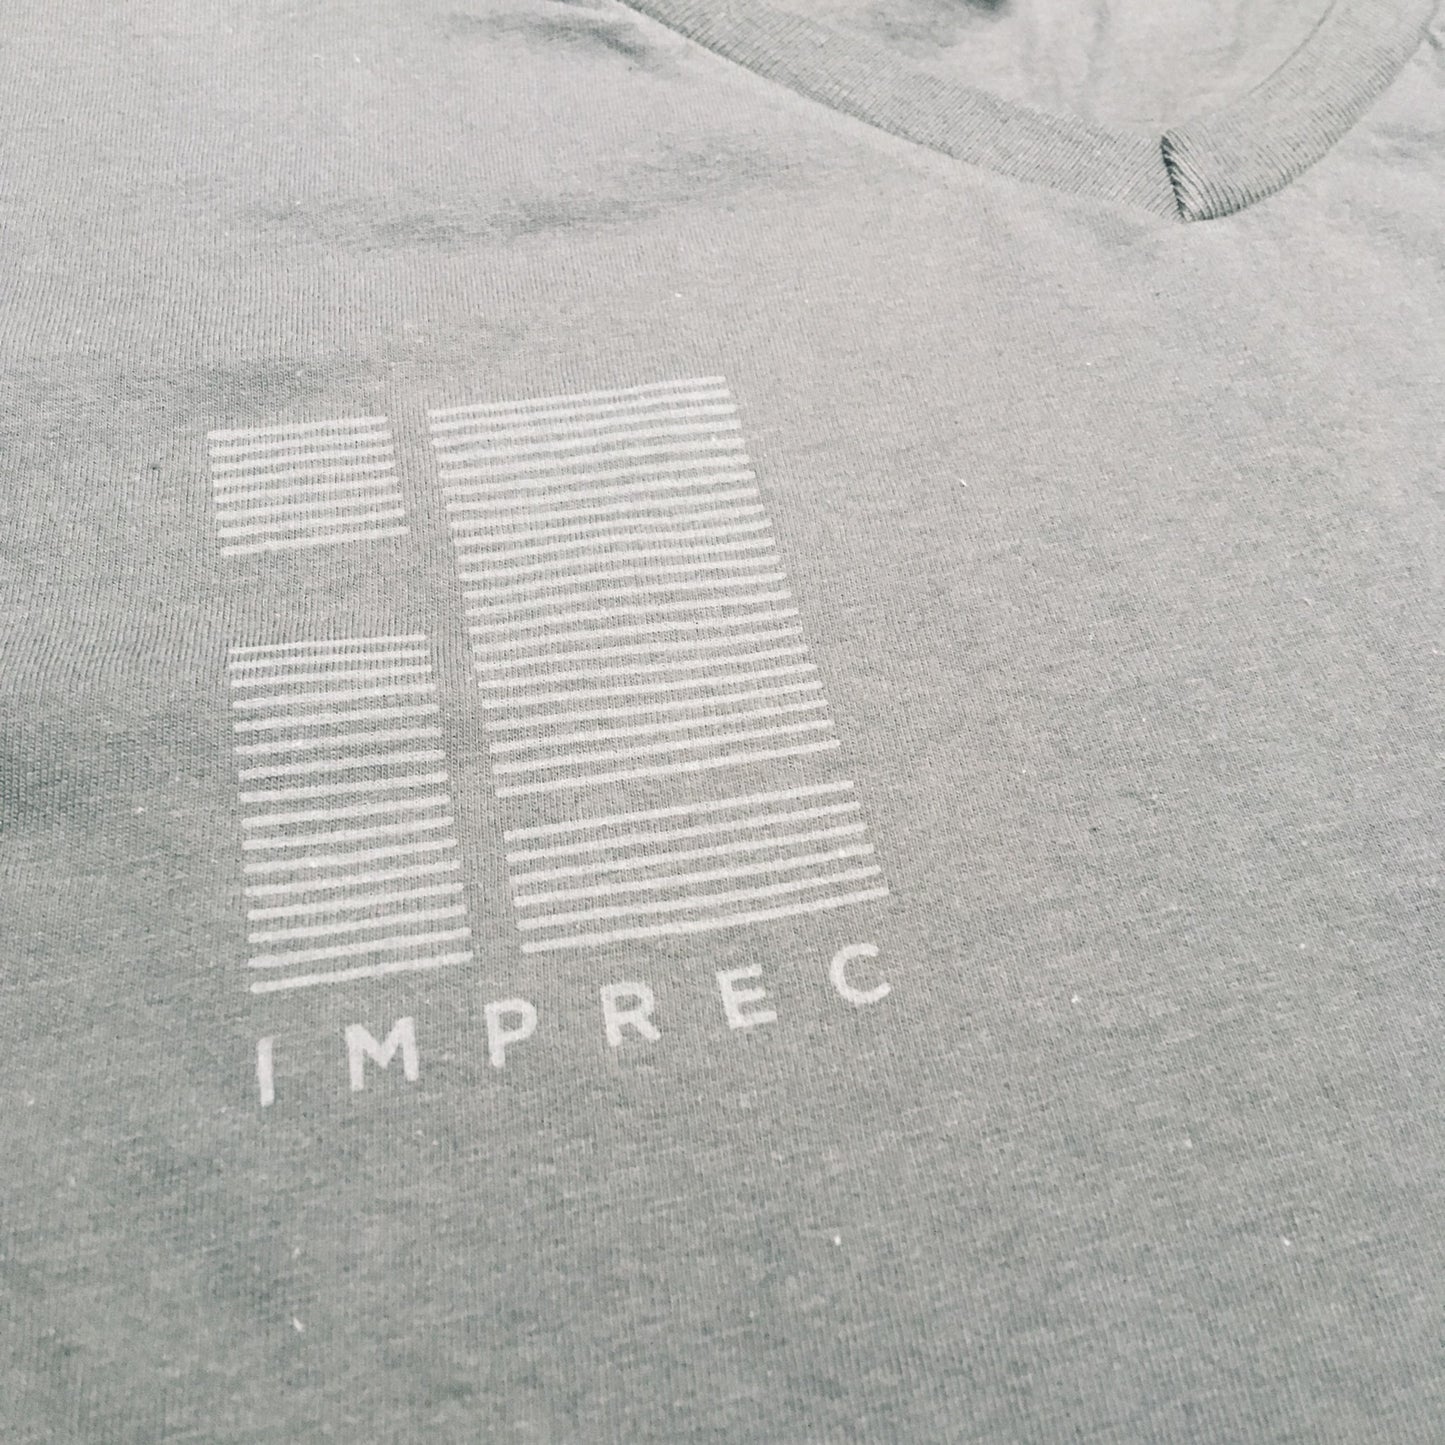 Imprec Pocket Print V-Neck - Fitted T-Shirt